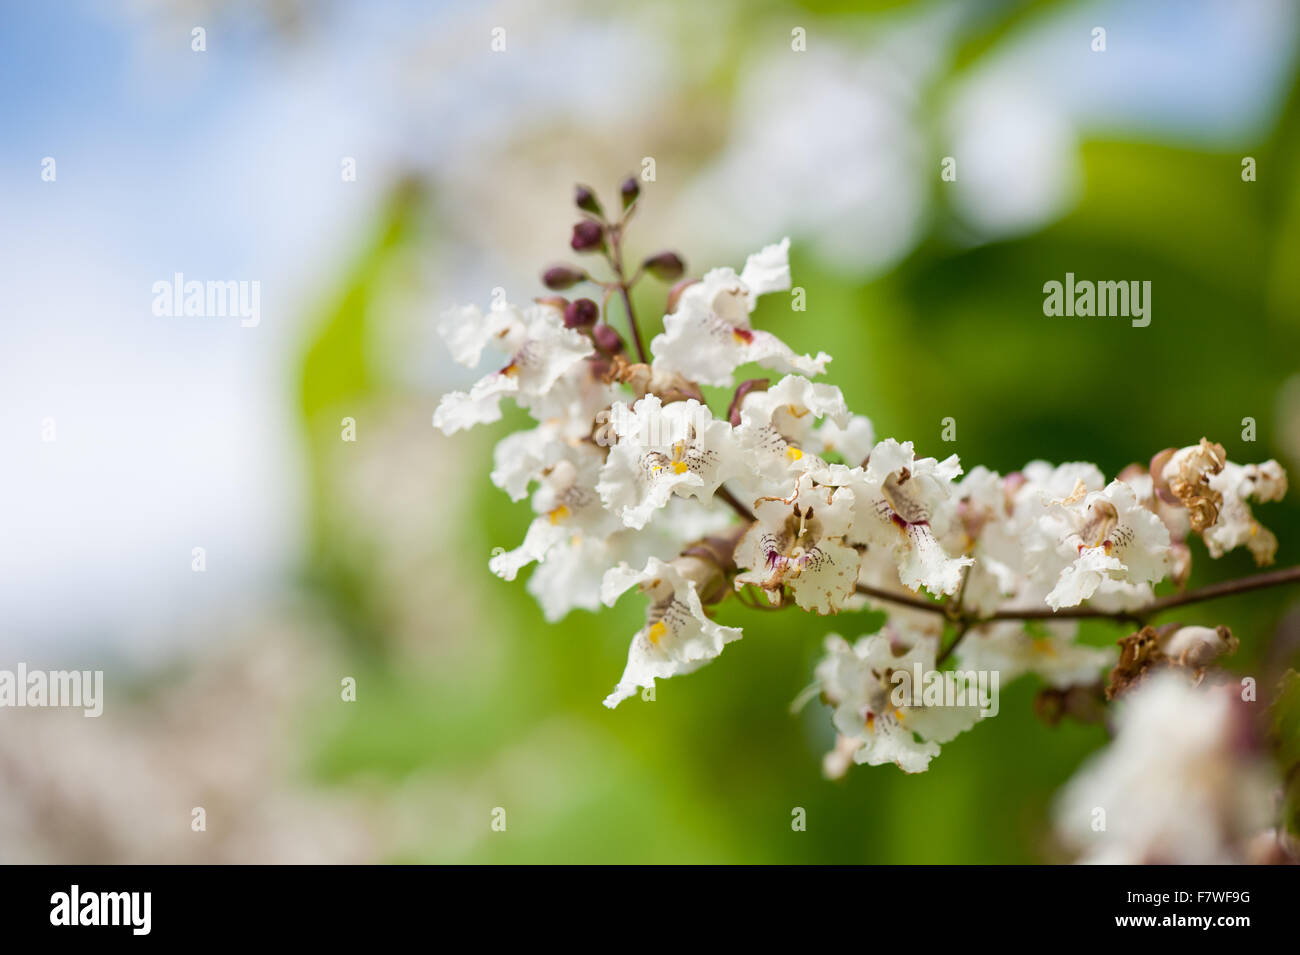 Röhrenförmige Catalpa Blüte Makro, Laubbaum blühende weiße Blütenstände Nahaufnahme, Blumen zeigen im Juli... Stockfoto